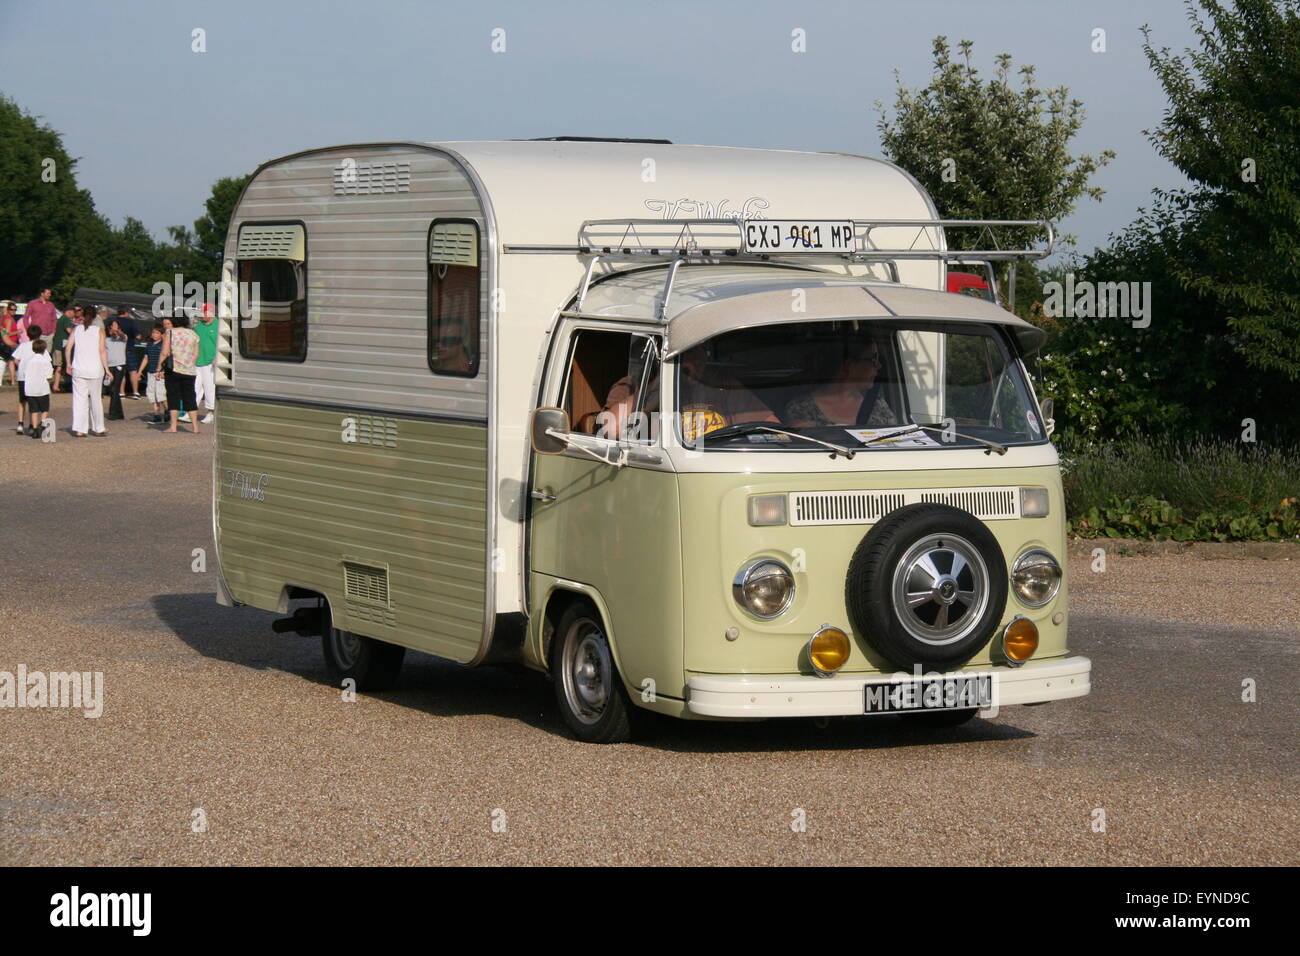 old vw camper van for sale uk